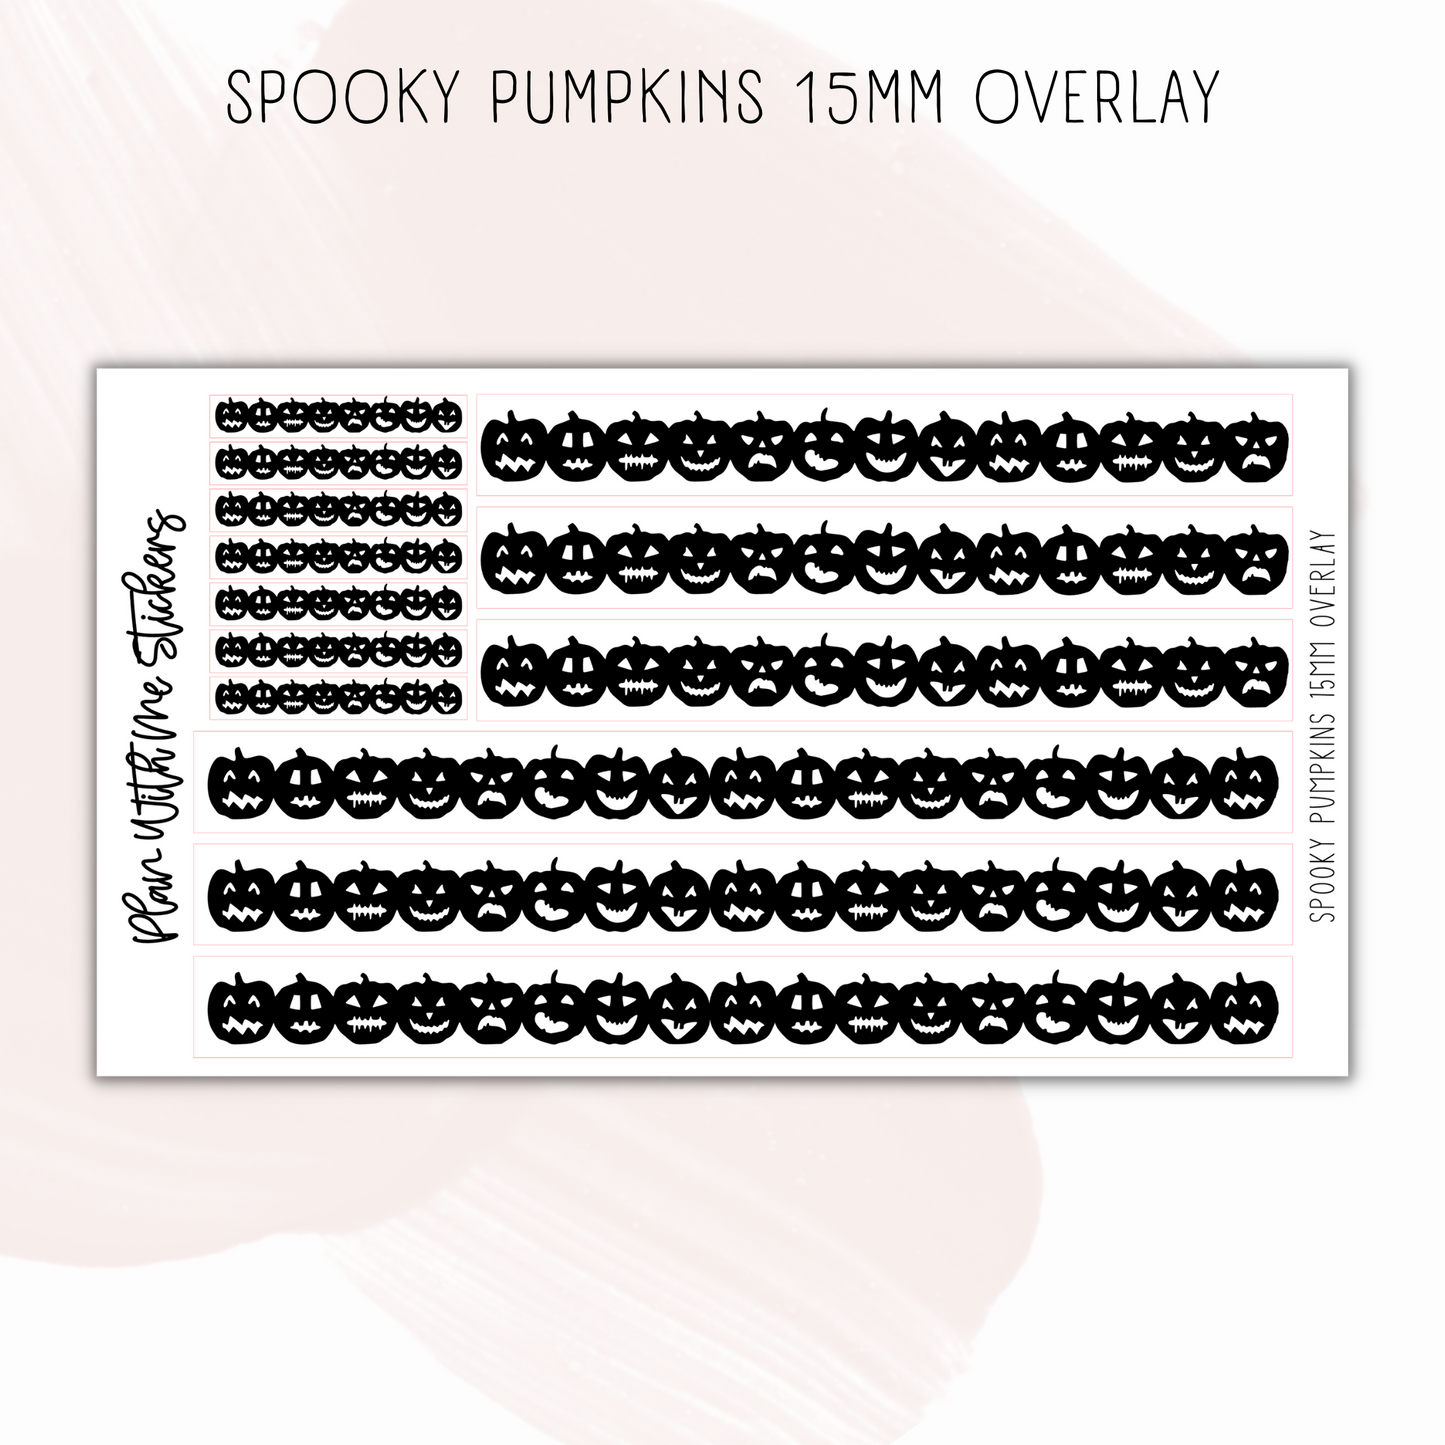 Spooky Pumpkins 15mm Overlays